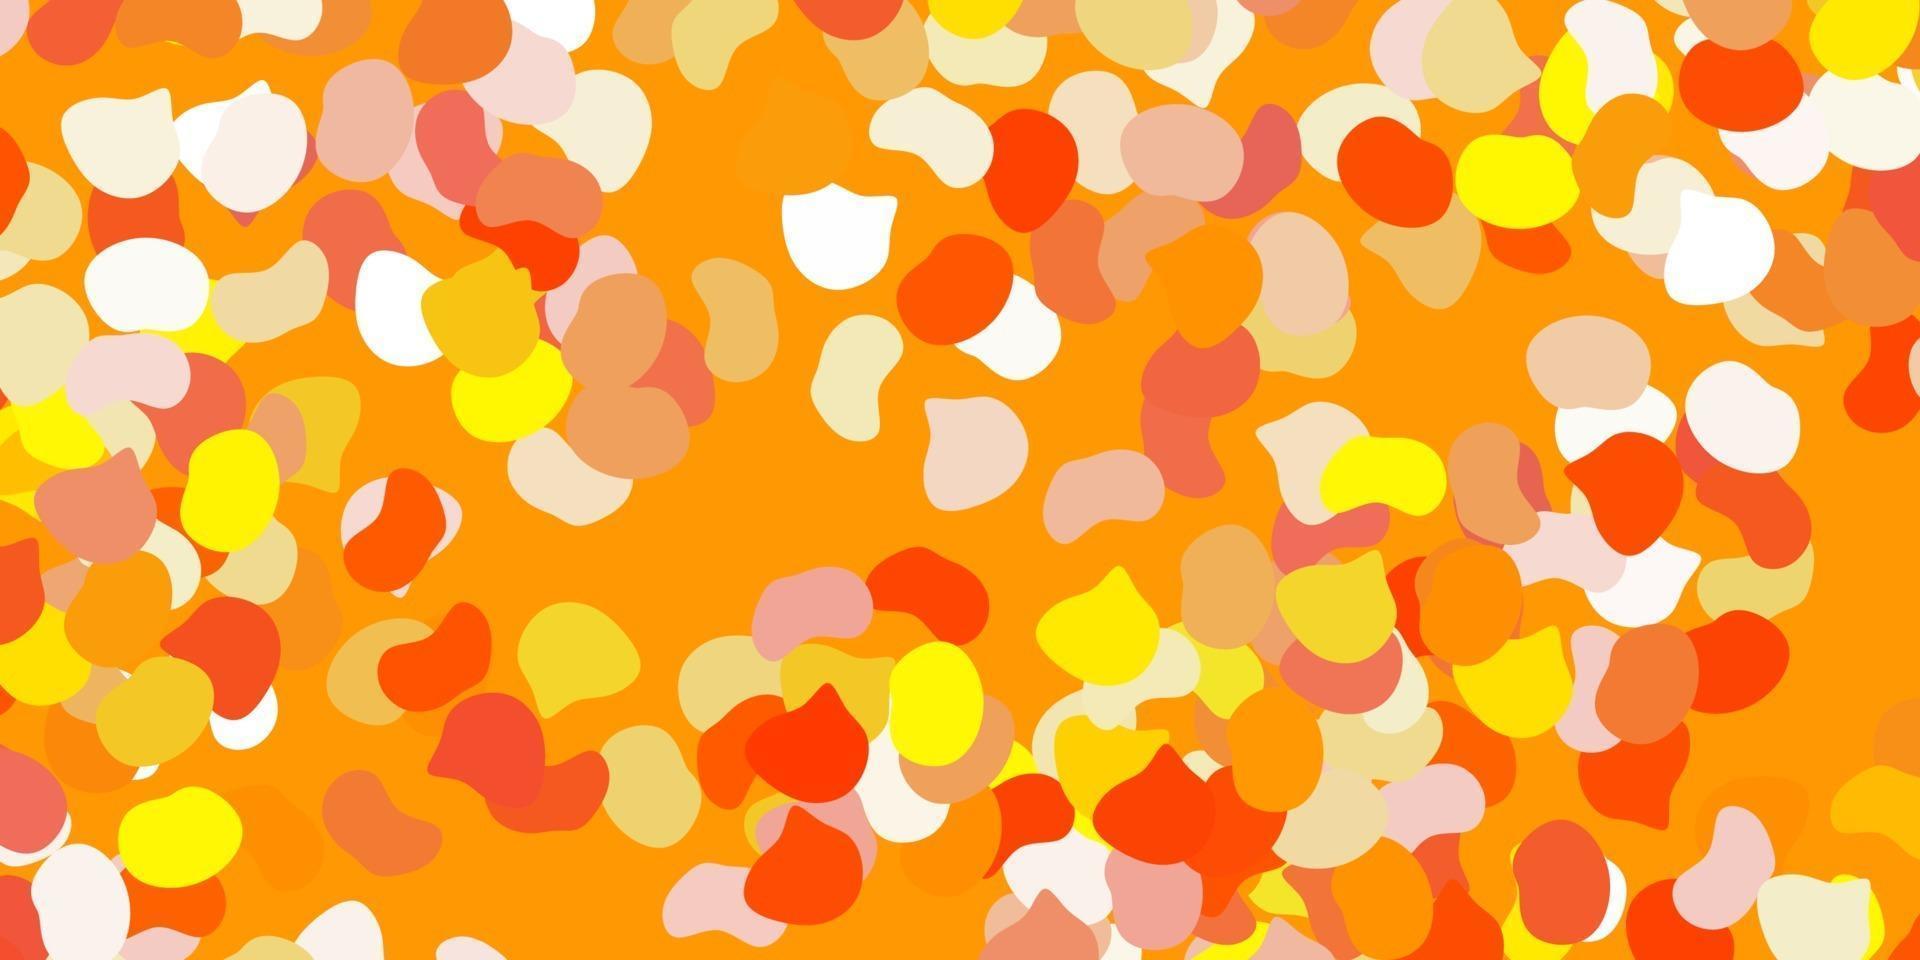 toile de fond de vecteur orange clair avec des formes chaotiques.